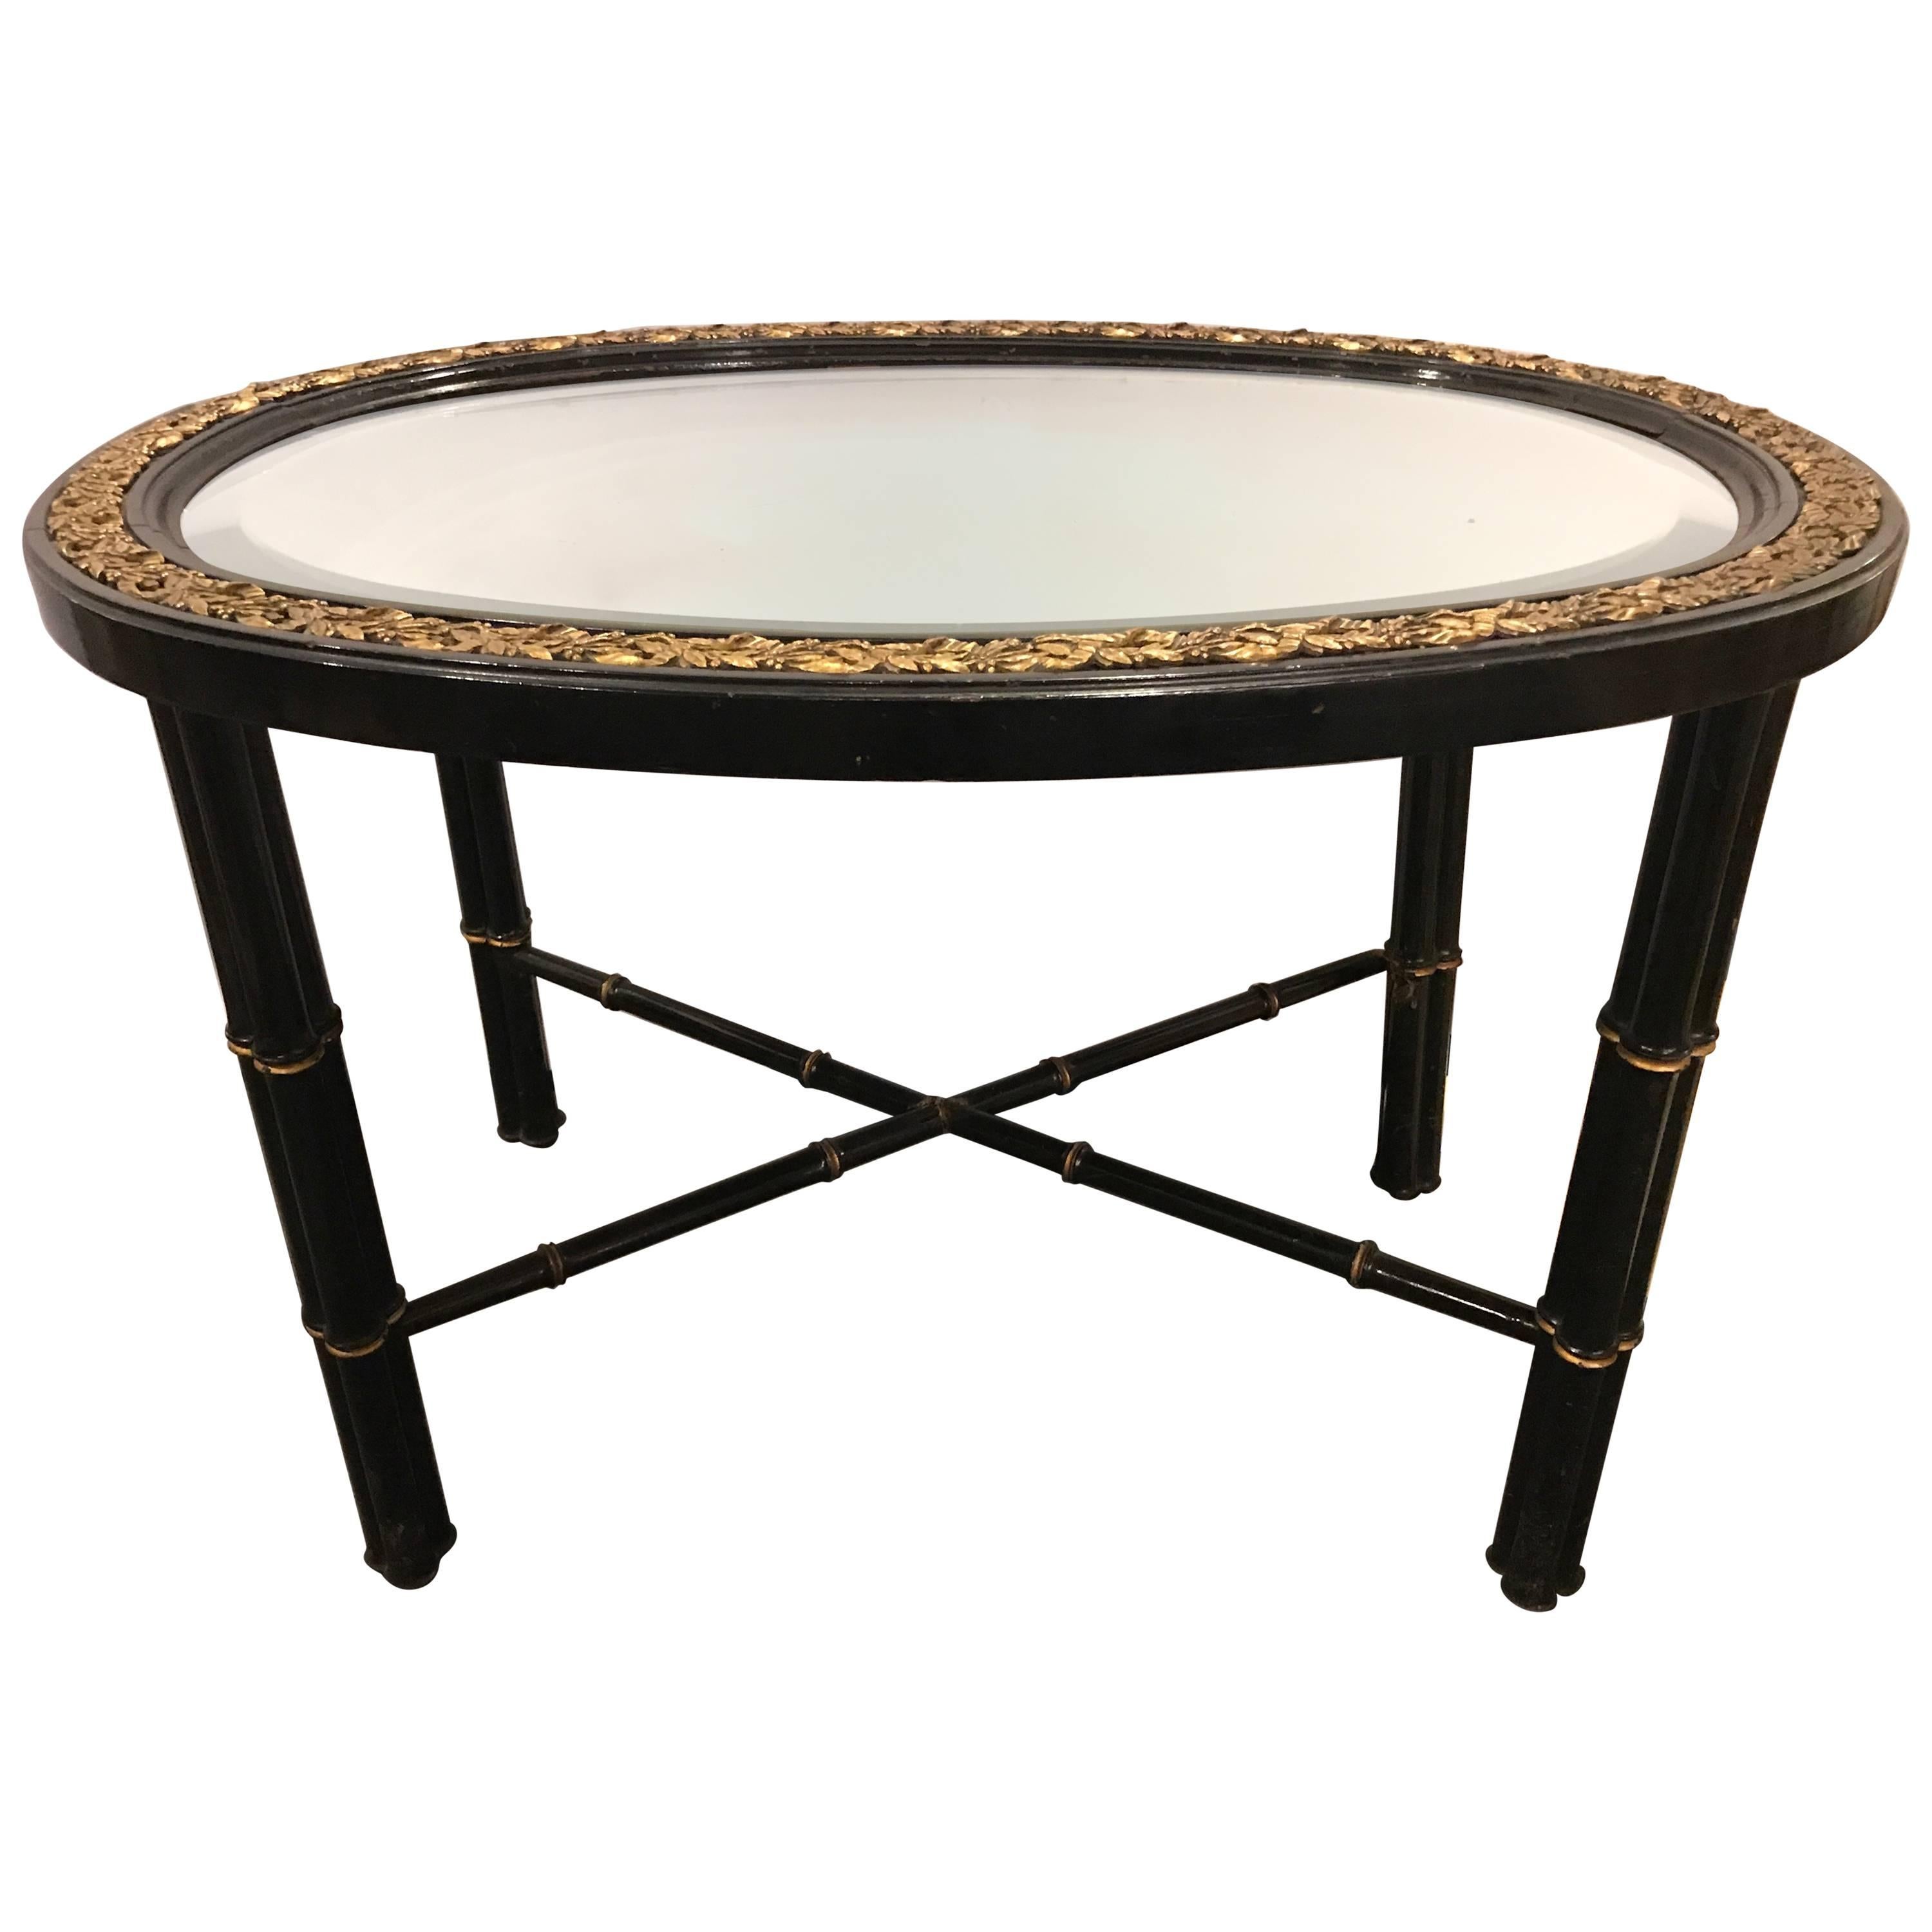 Table basse ovale Hollywood Regency avec plateau en miroir biseauté et montures en bronze